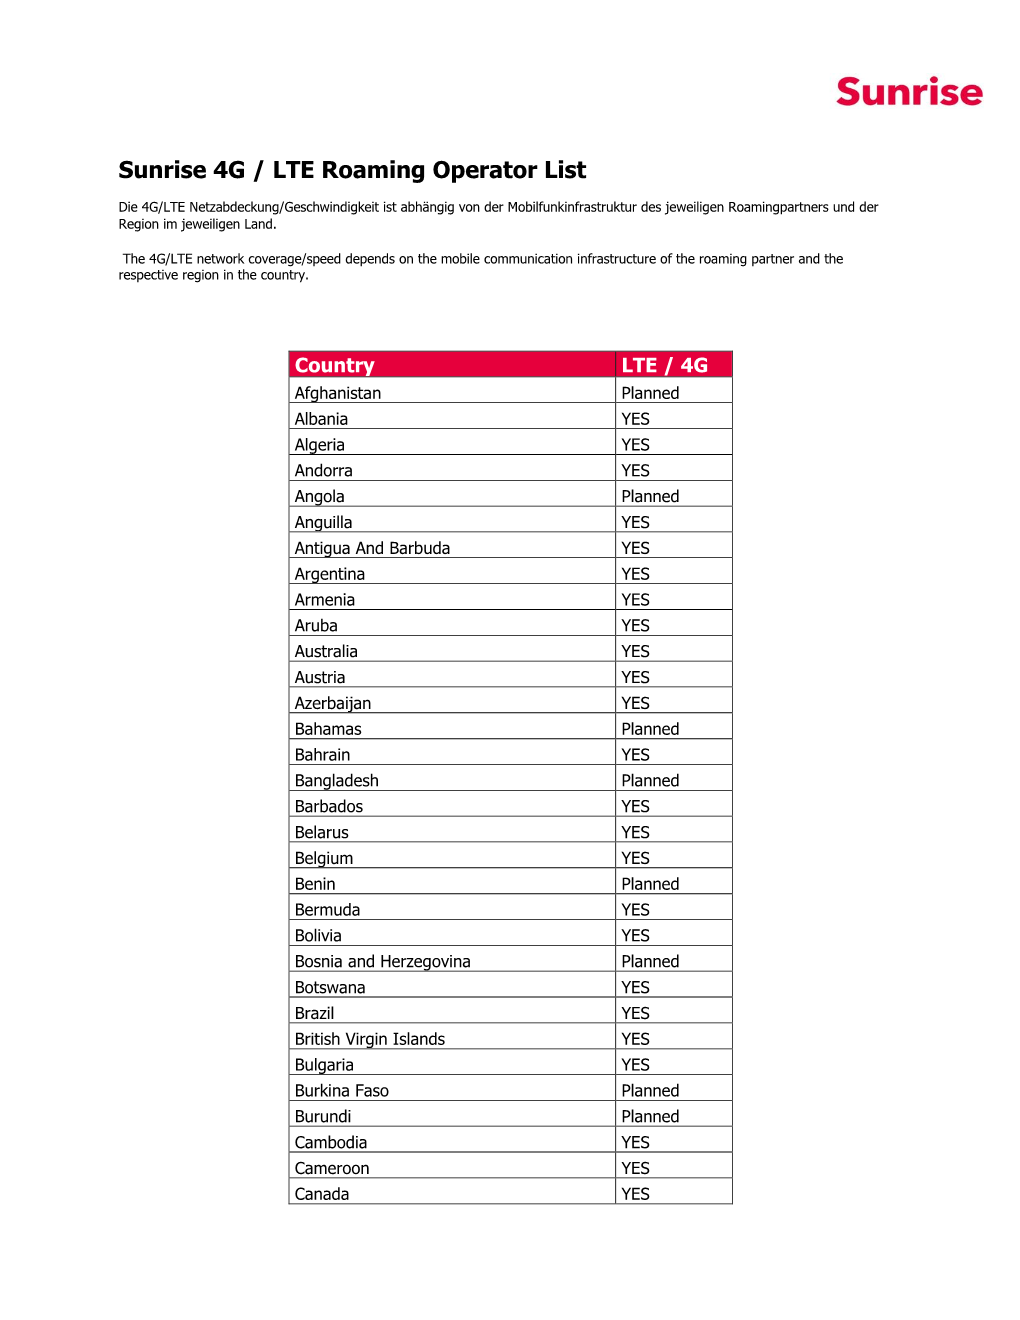 Sunrise 4G / LTE Roaming Operator List